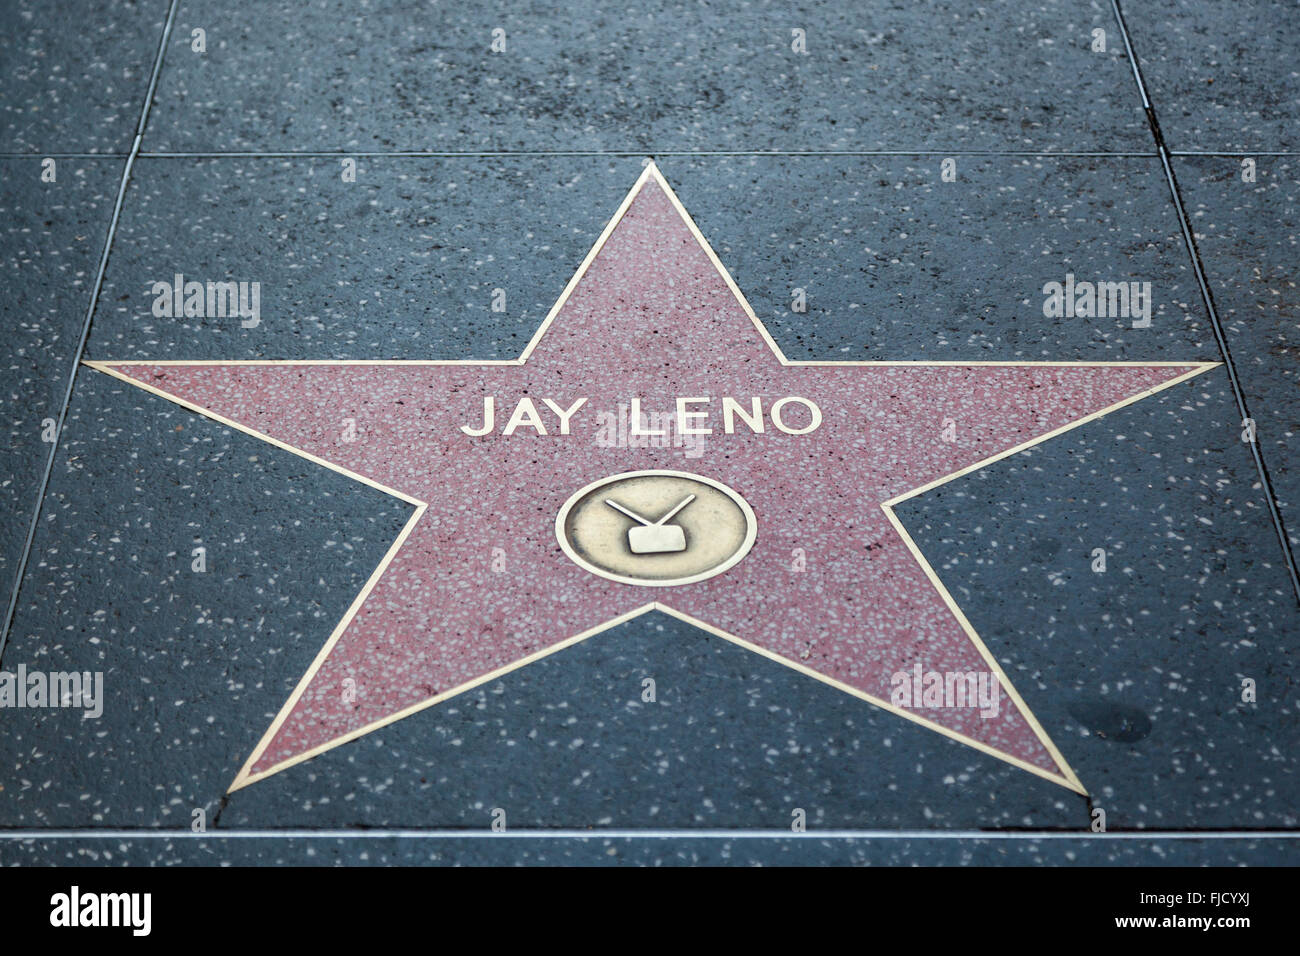 HOLLYWOOD, CALIFORNIA - February 8 2015: Jay Leno's Hollywood Walk of Fame star on February 8, 2015 in Hollywood, CA. Stock Photo